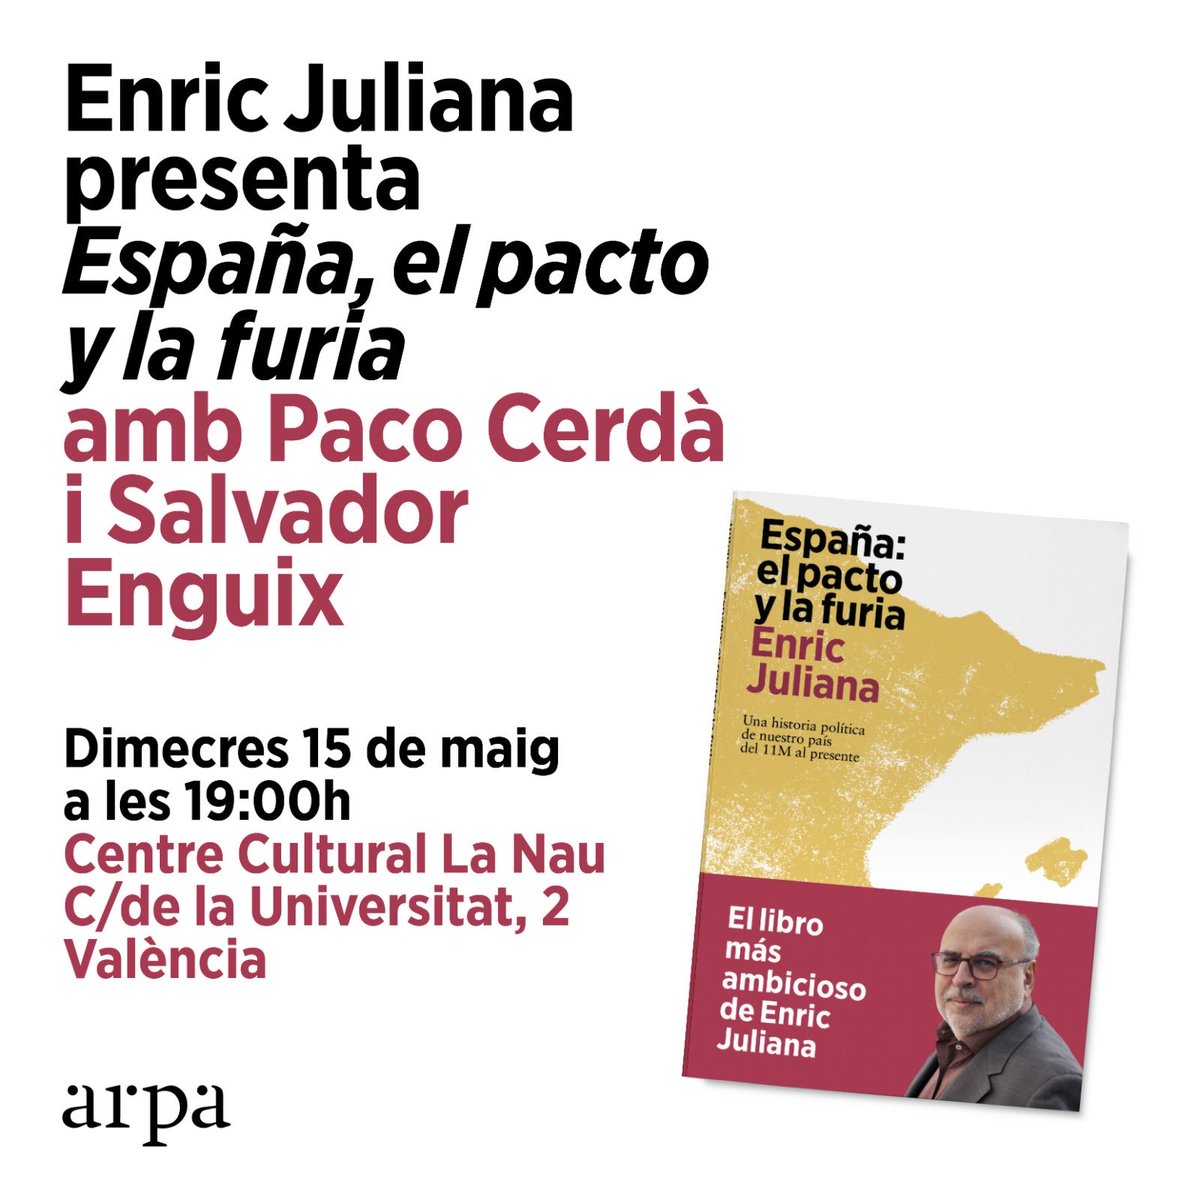 El pacte i la fúria després de les eleccions catalanes. Demà, presentació a València amb Paco Cerdà i Salvador Enguix.